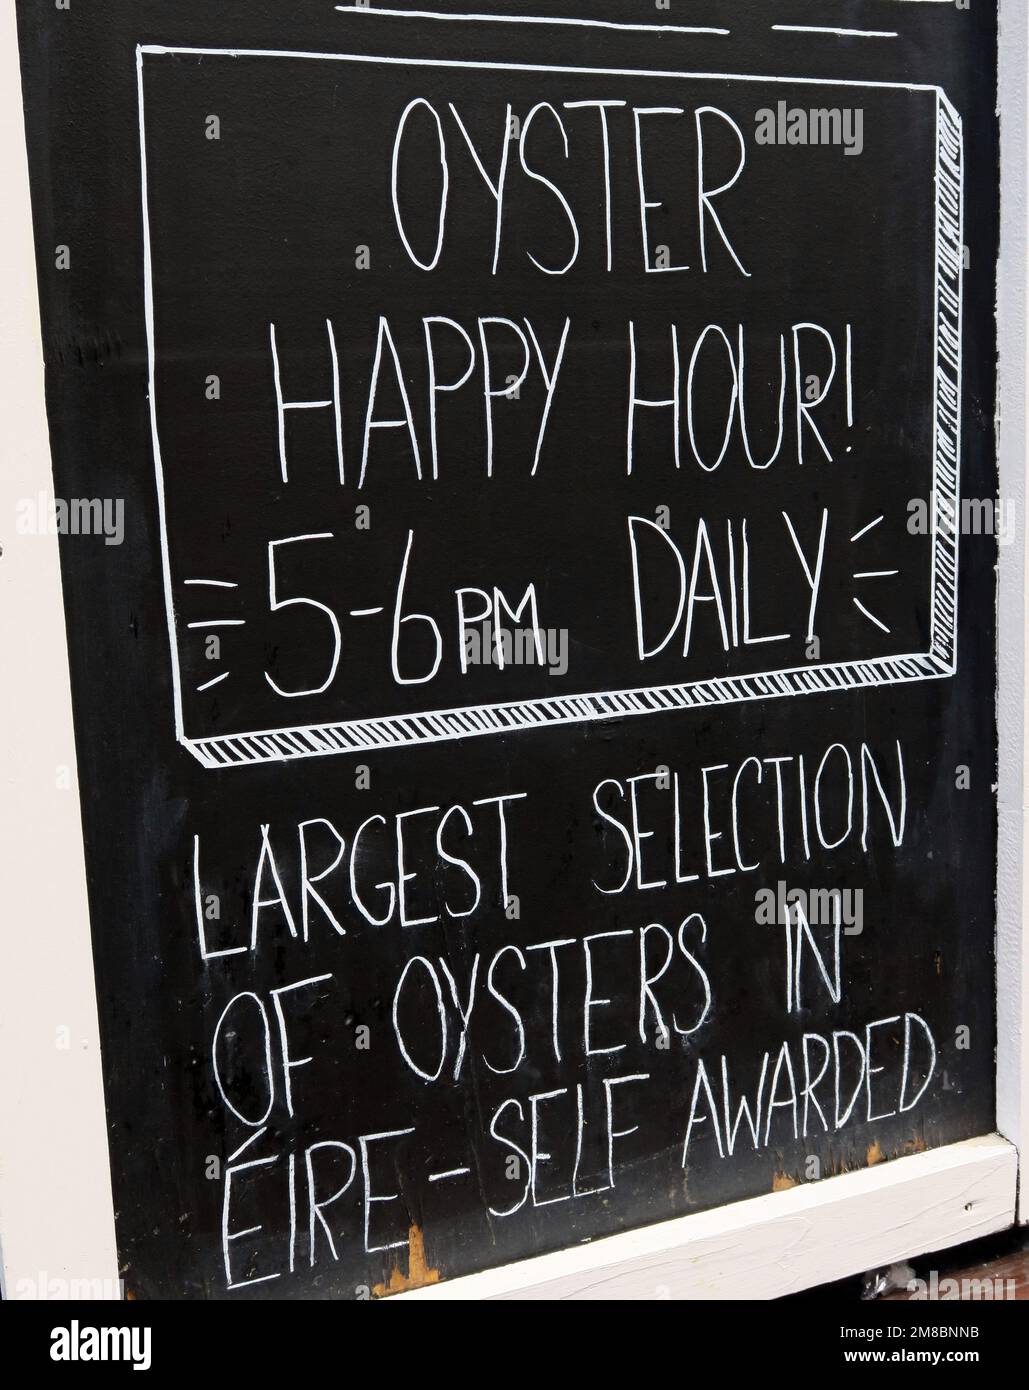 Oyster Happy Hour, 5-6pm, täglich, Tafel, Eire, Irland Stockfoto